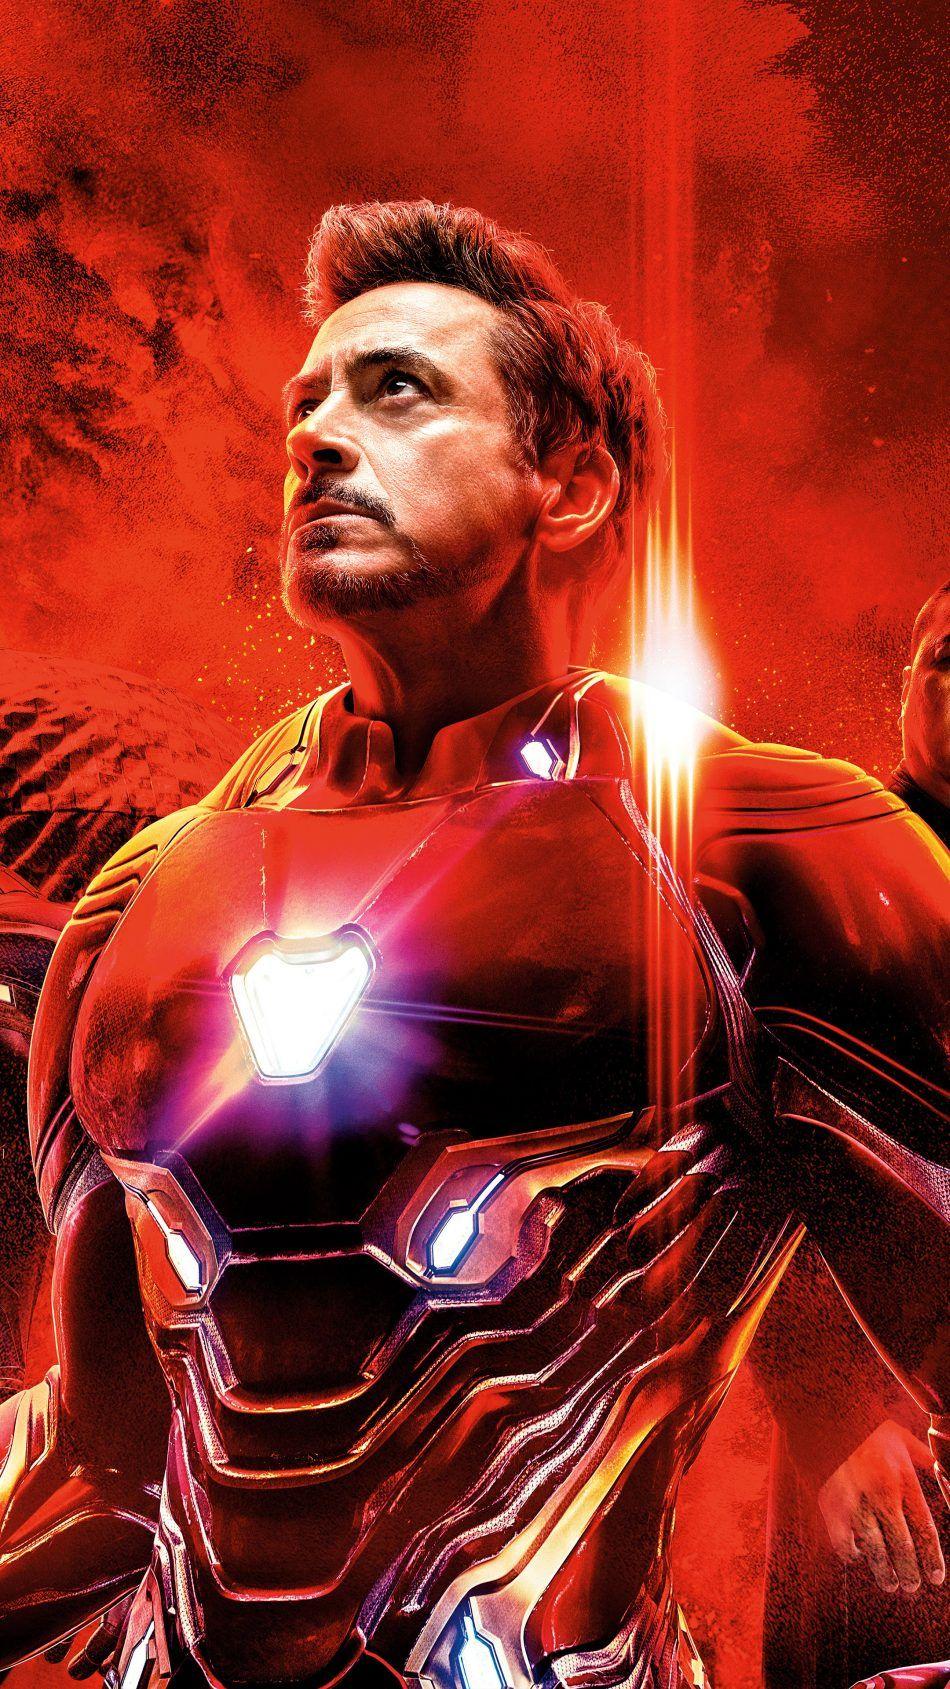 Iron Man In Avengers Endgame 4K Ultra HD Mobile Wallpaper. Iron man poster, Iron man HD wallpaper, Iron man wallpaper